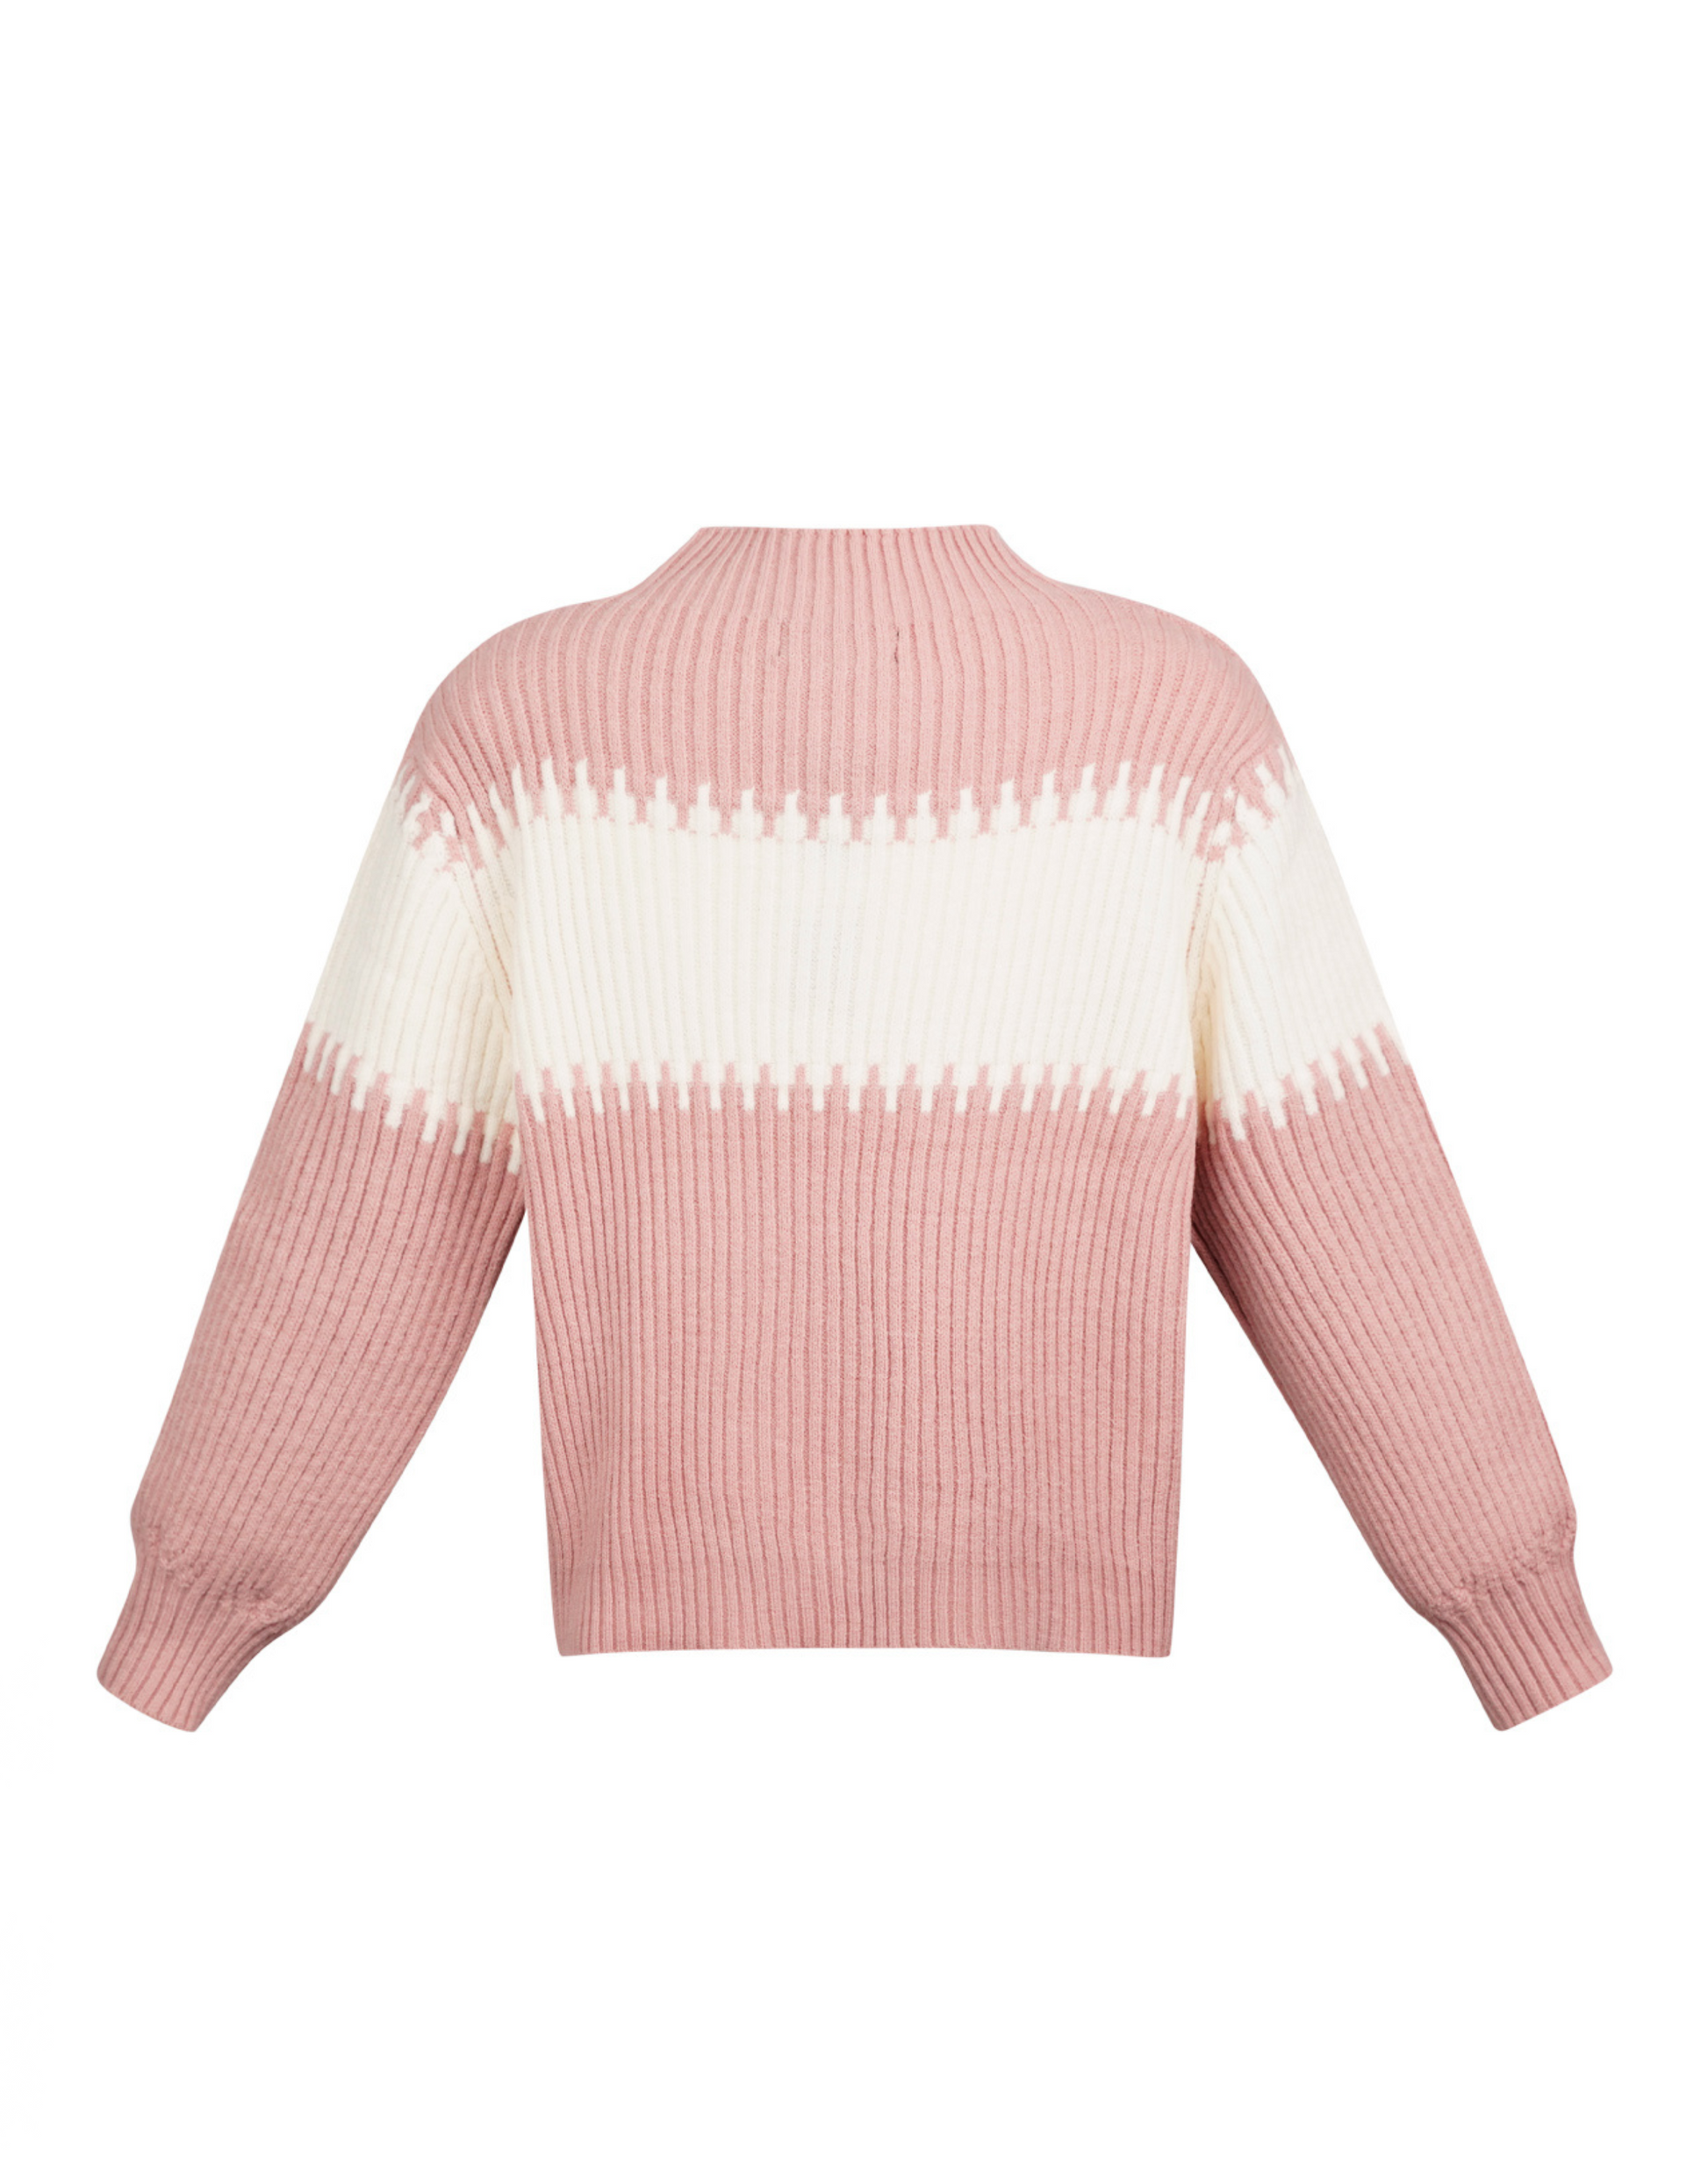 Er du på udkig efter den perfekte sweater til efterår og vinter? Så er den lige her.  Smuk striktrøje i 3 forskellige farver i det fineste udtryk.  Materiale: 45% akryl, 30% polyester, 25% nylon Pasform: Normal i størrelsen